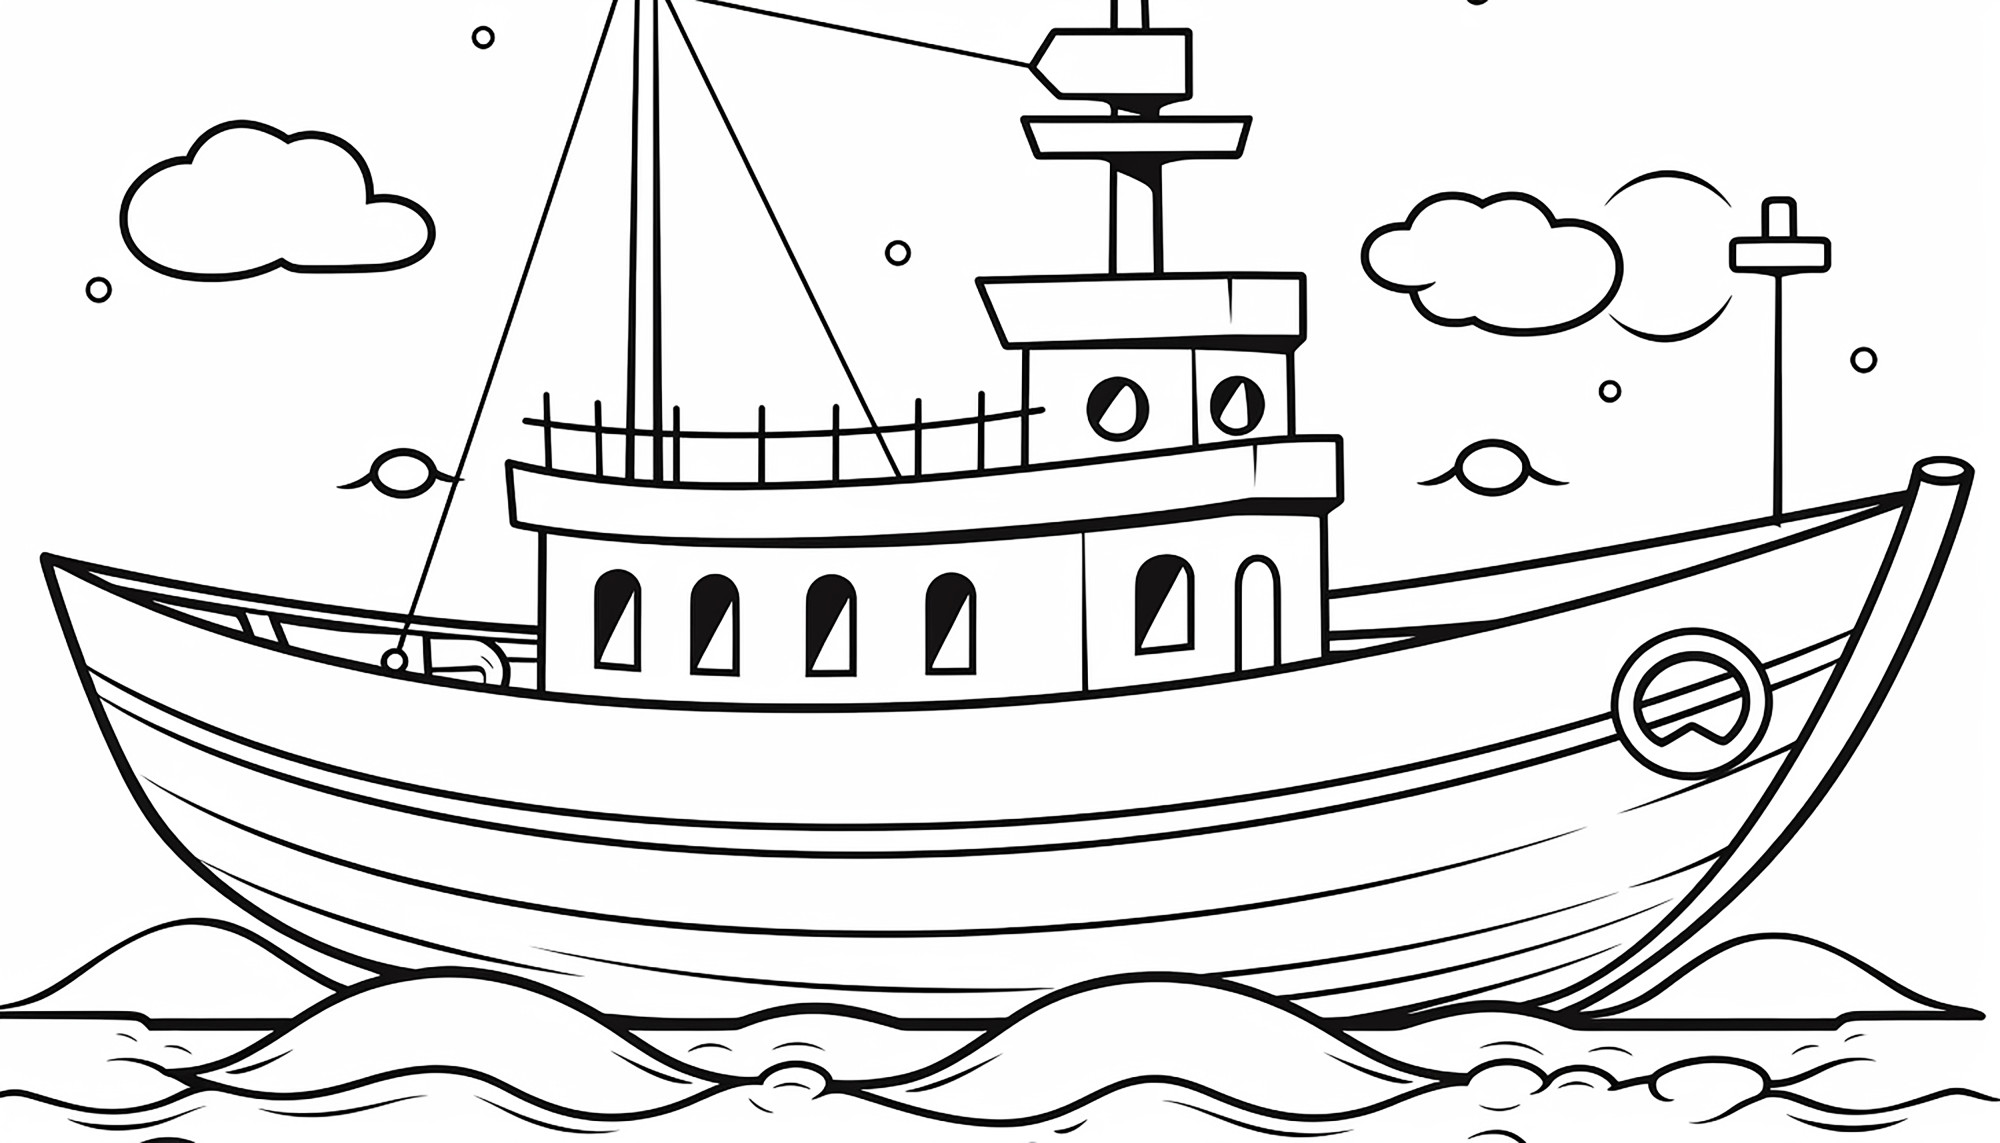 Раскраска для детей: корабль в море «Ветер свободы»